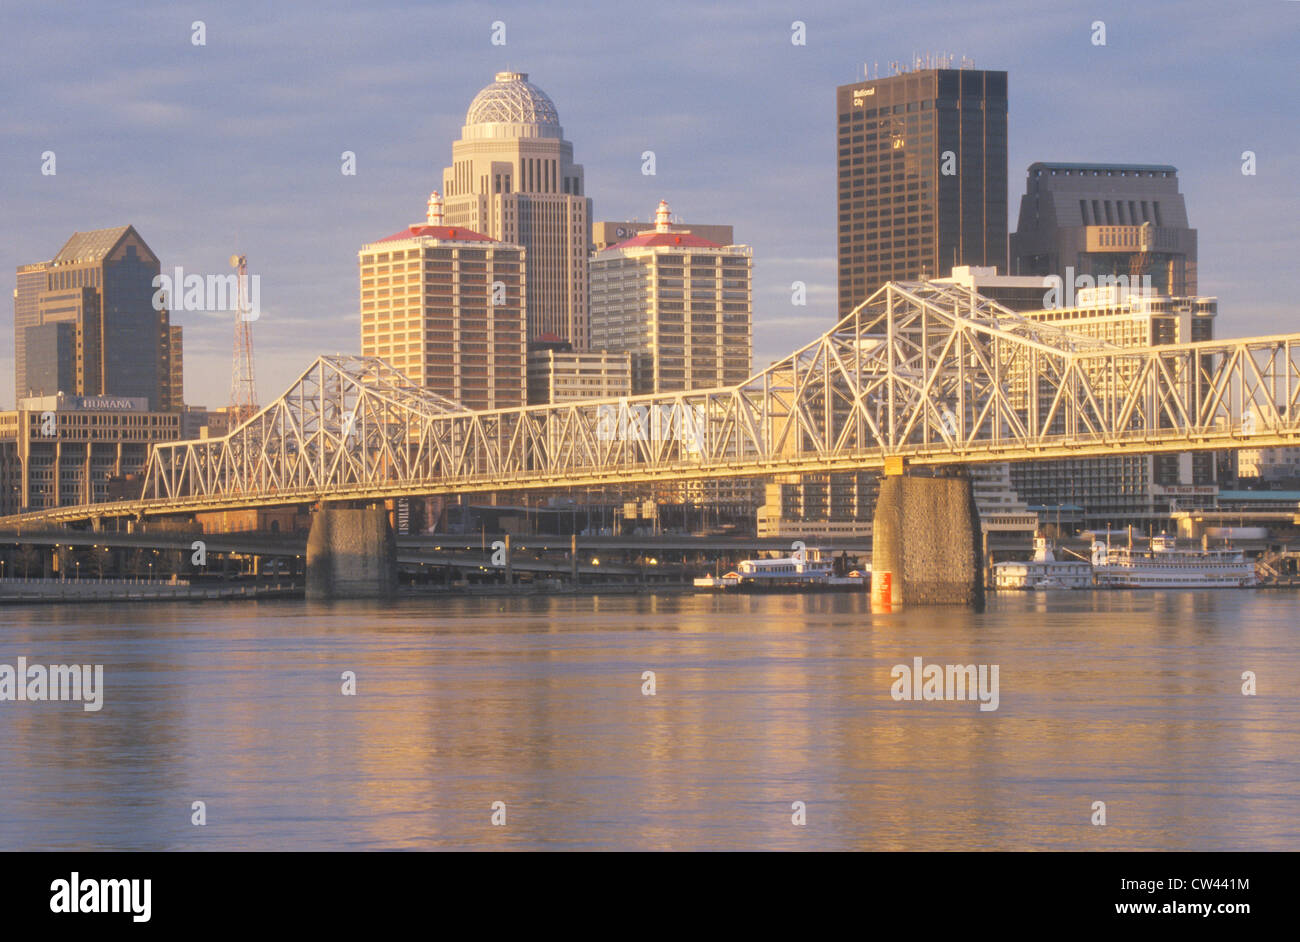 Looeyville Kentucky neon sign Louisville Stock Photo - Alamy